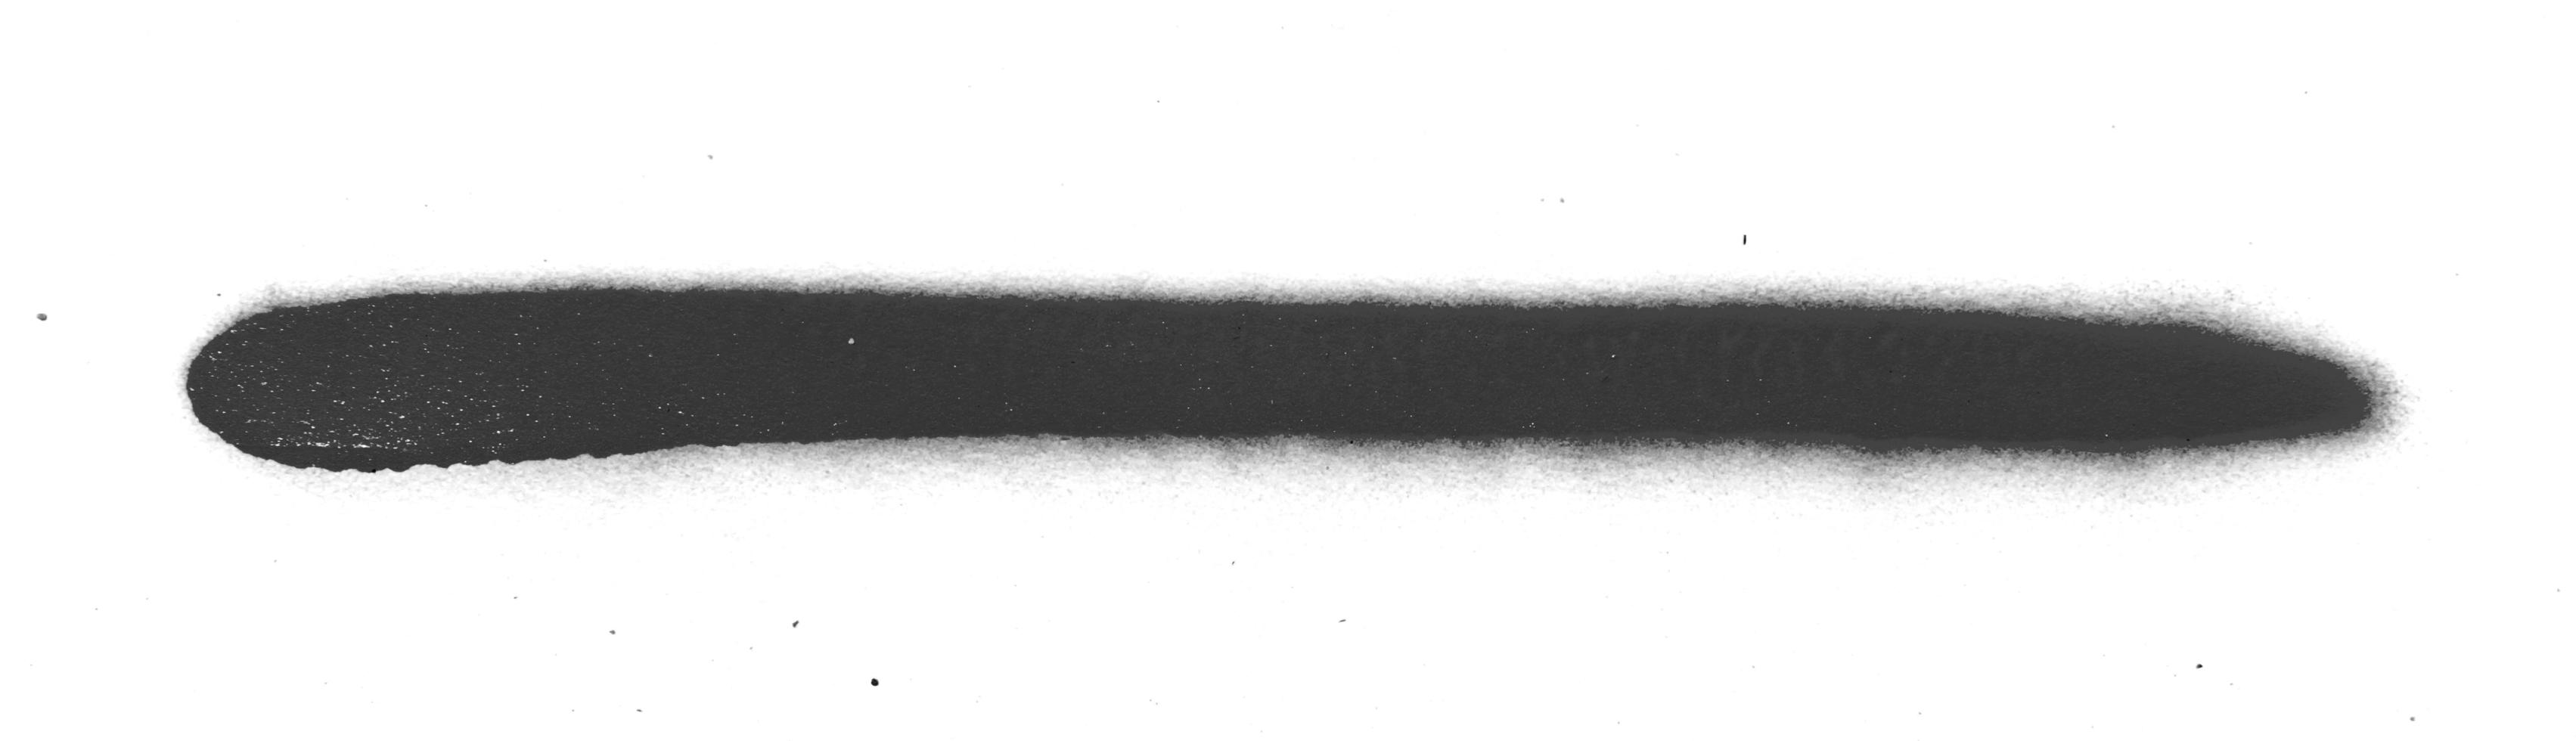 struttura dell'inchiostro della vernice spray nera foto